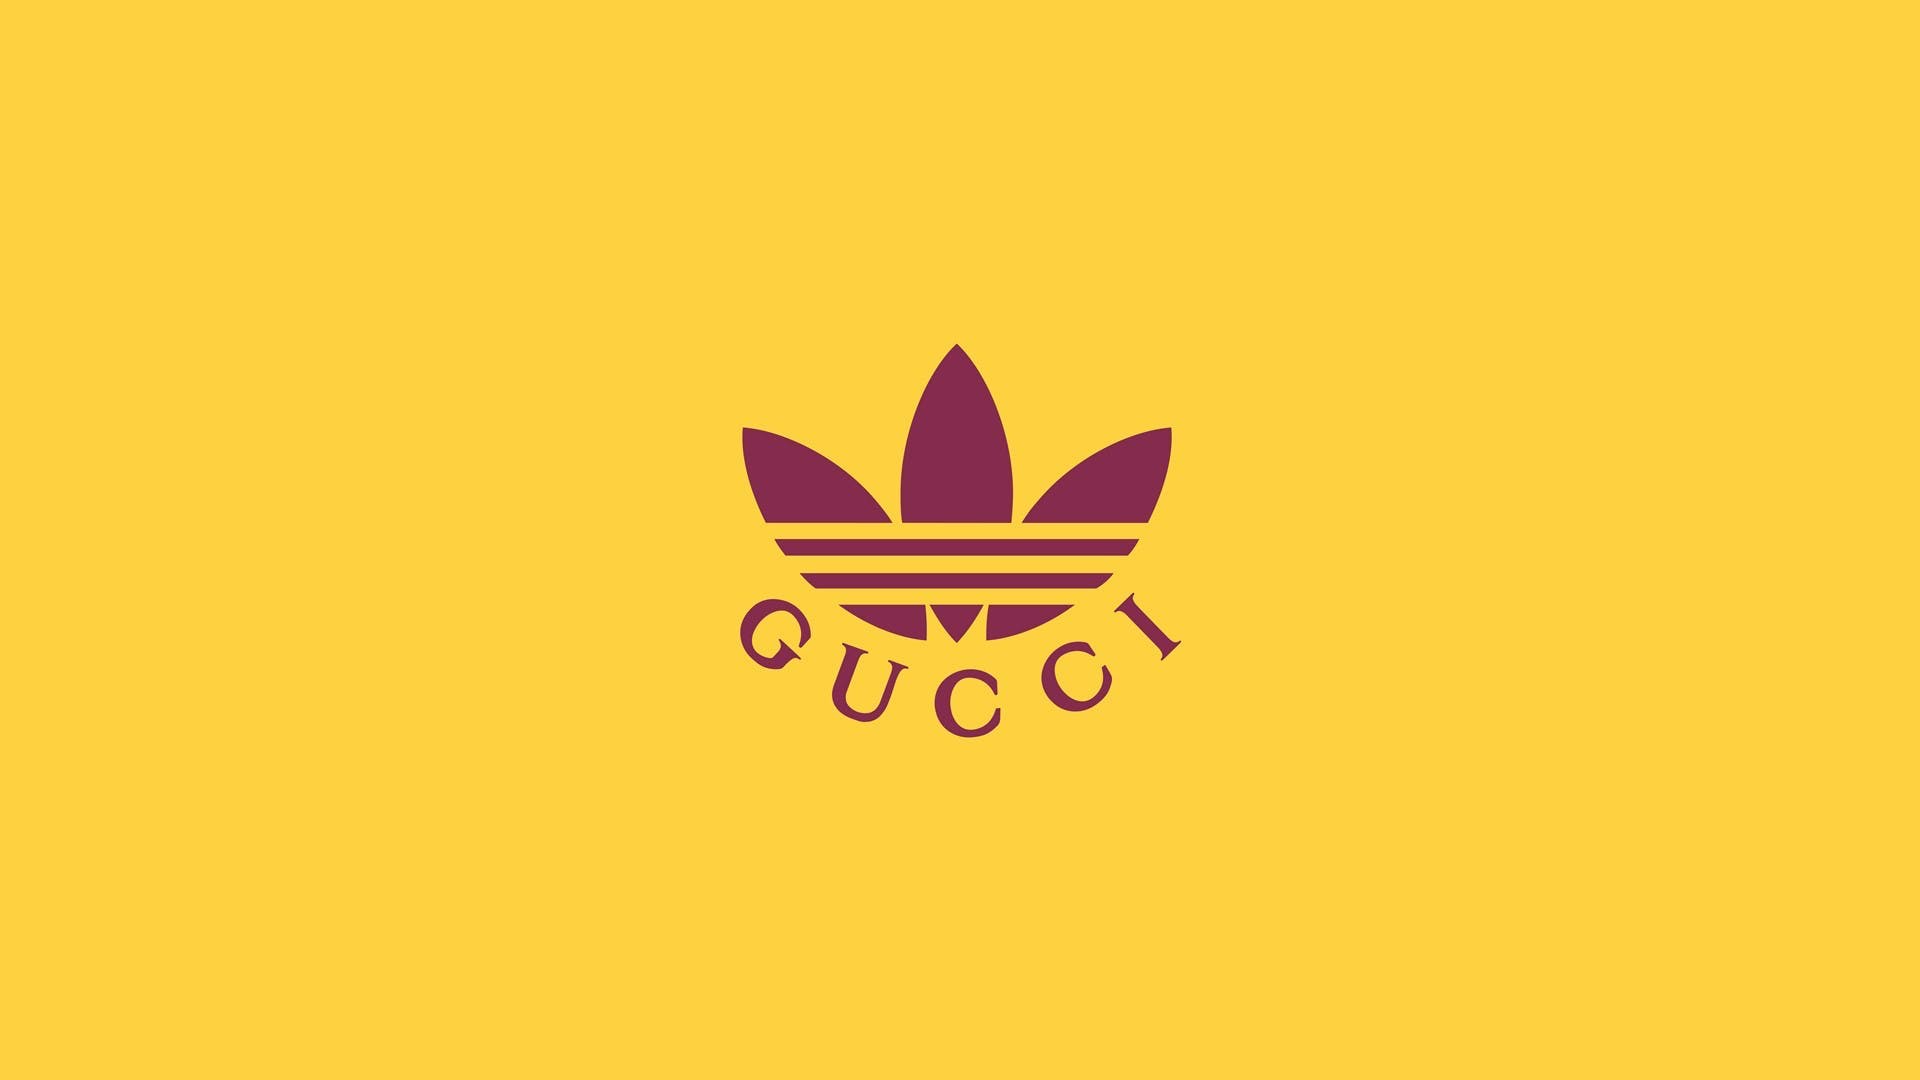 Gucci bắt tay Adidas - Thời trang của những kẻ lập dị